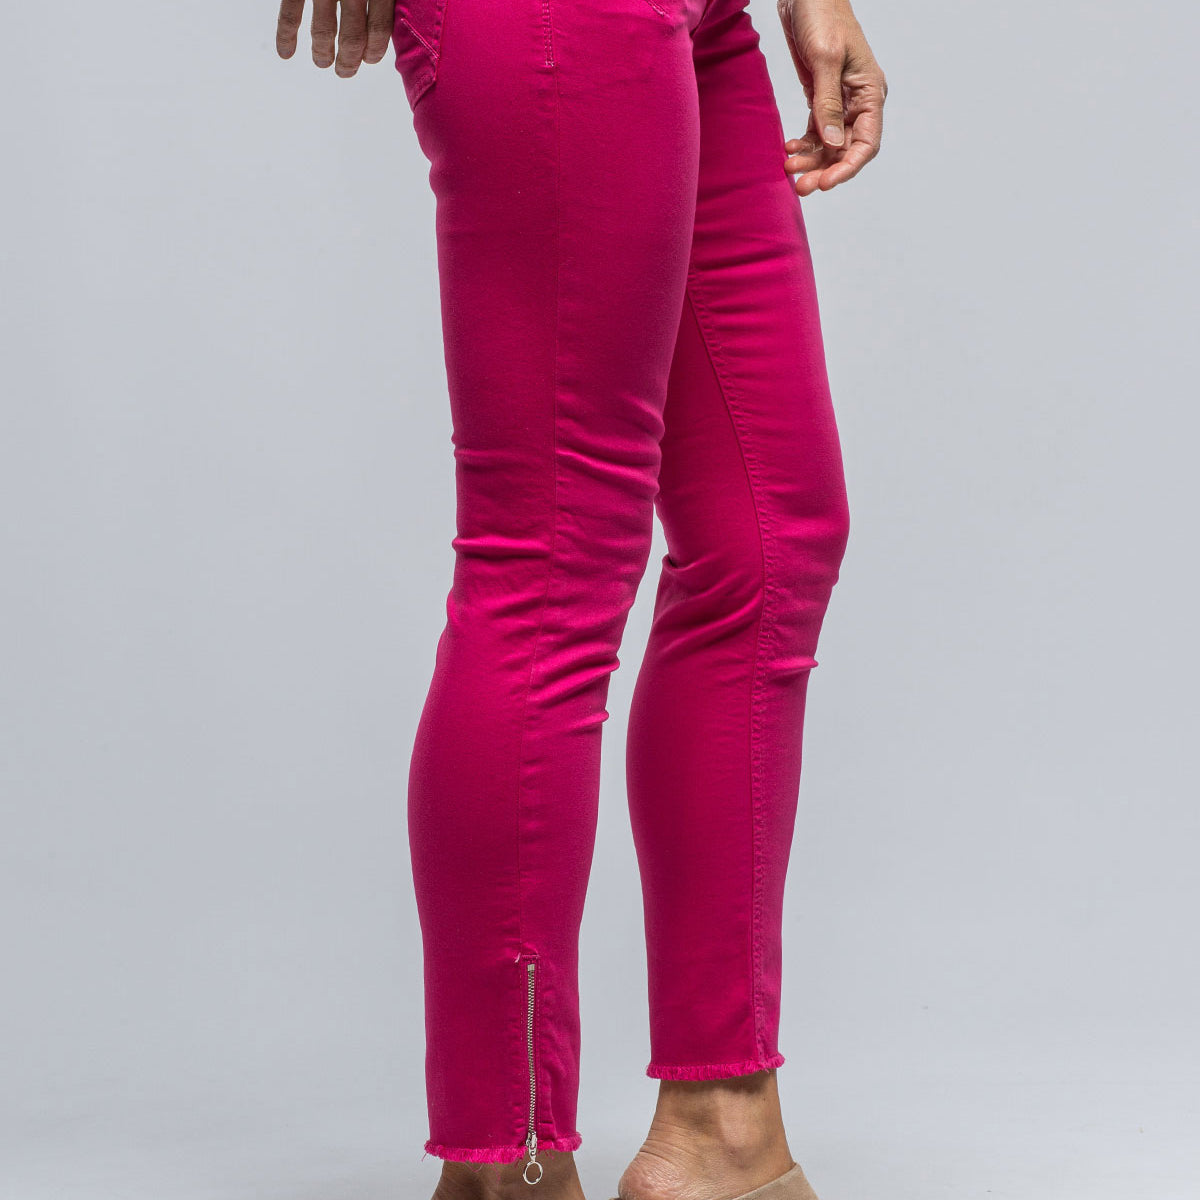 MAC Rich Slim Chic In Hot Pink | Ladies - Pants - Jeans | Mac Jeans